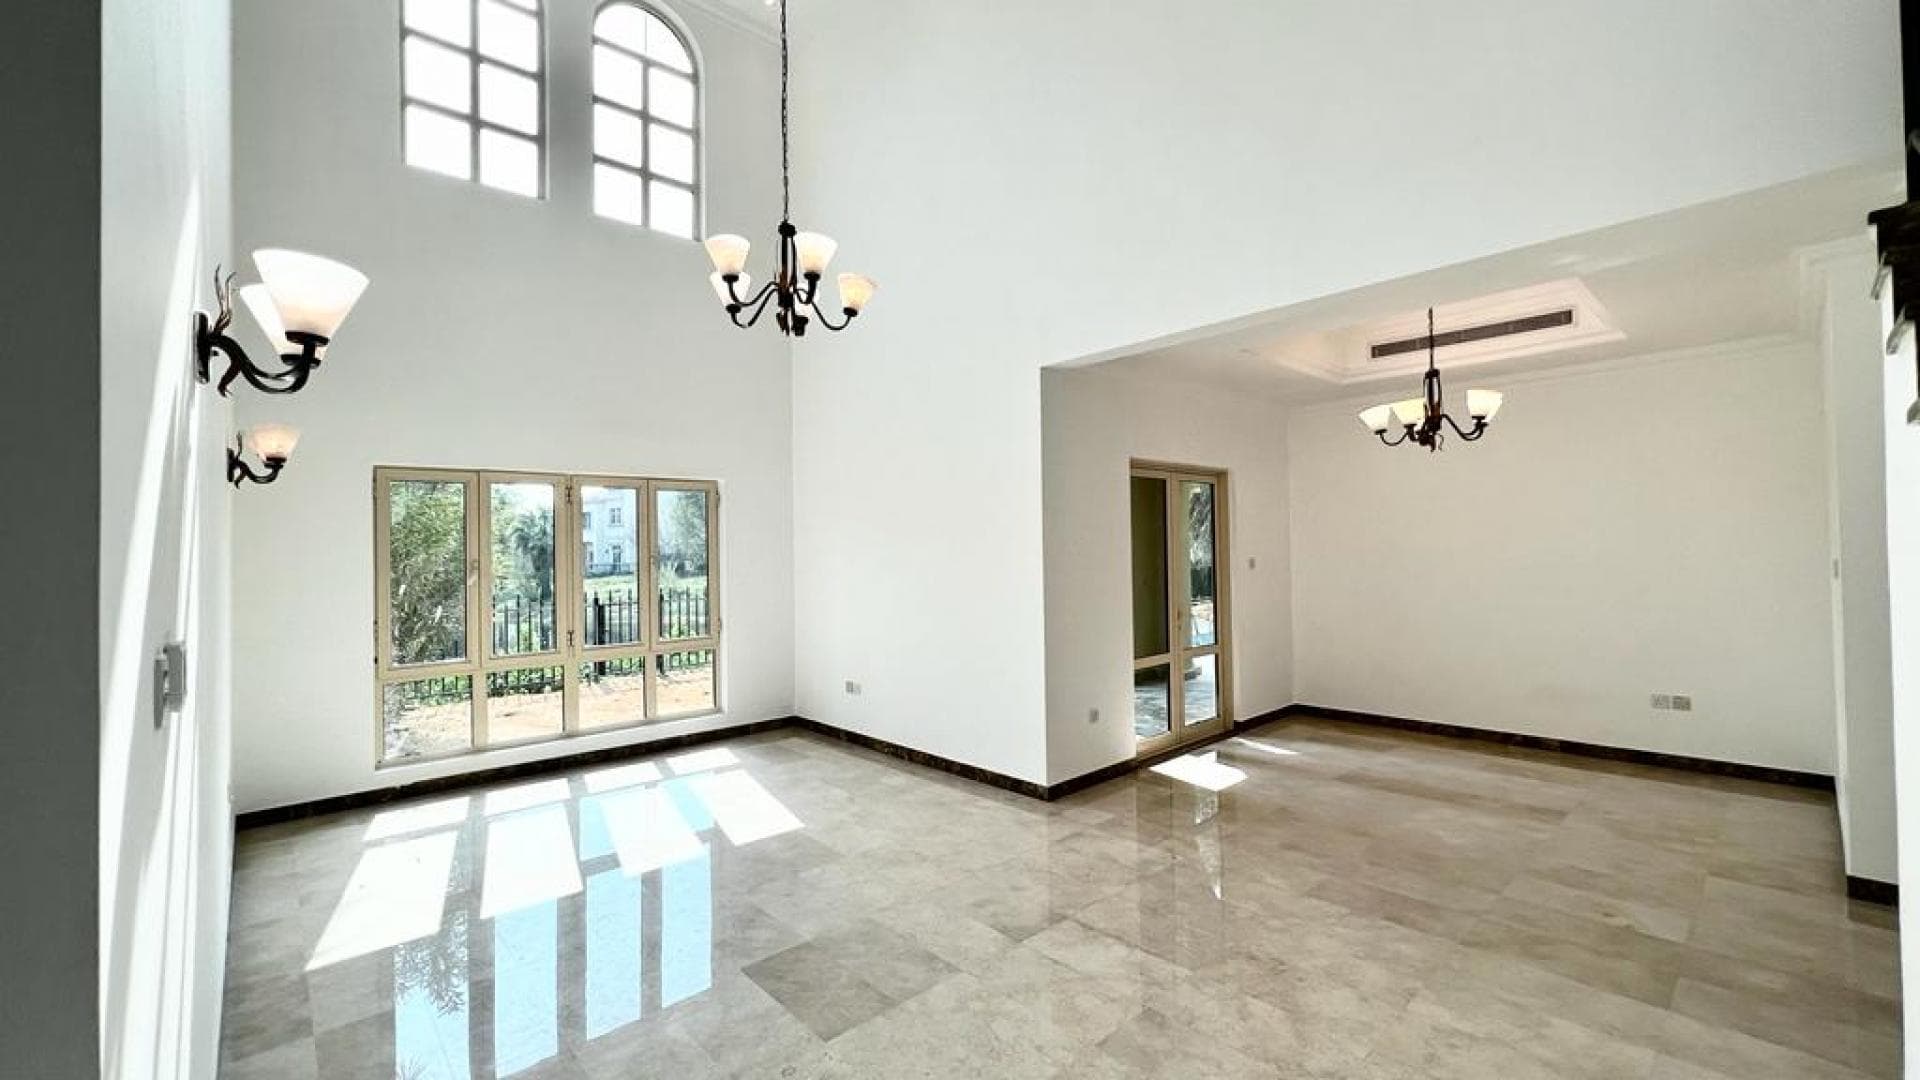 4 Bedroom Villa For Rent Al Thamam 13 Lp37330 2d5b0e62f64d0c00.jpeg